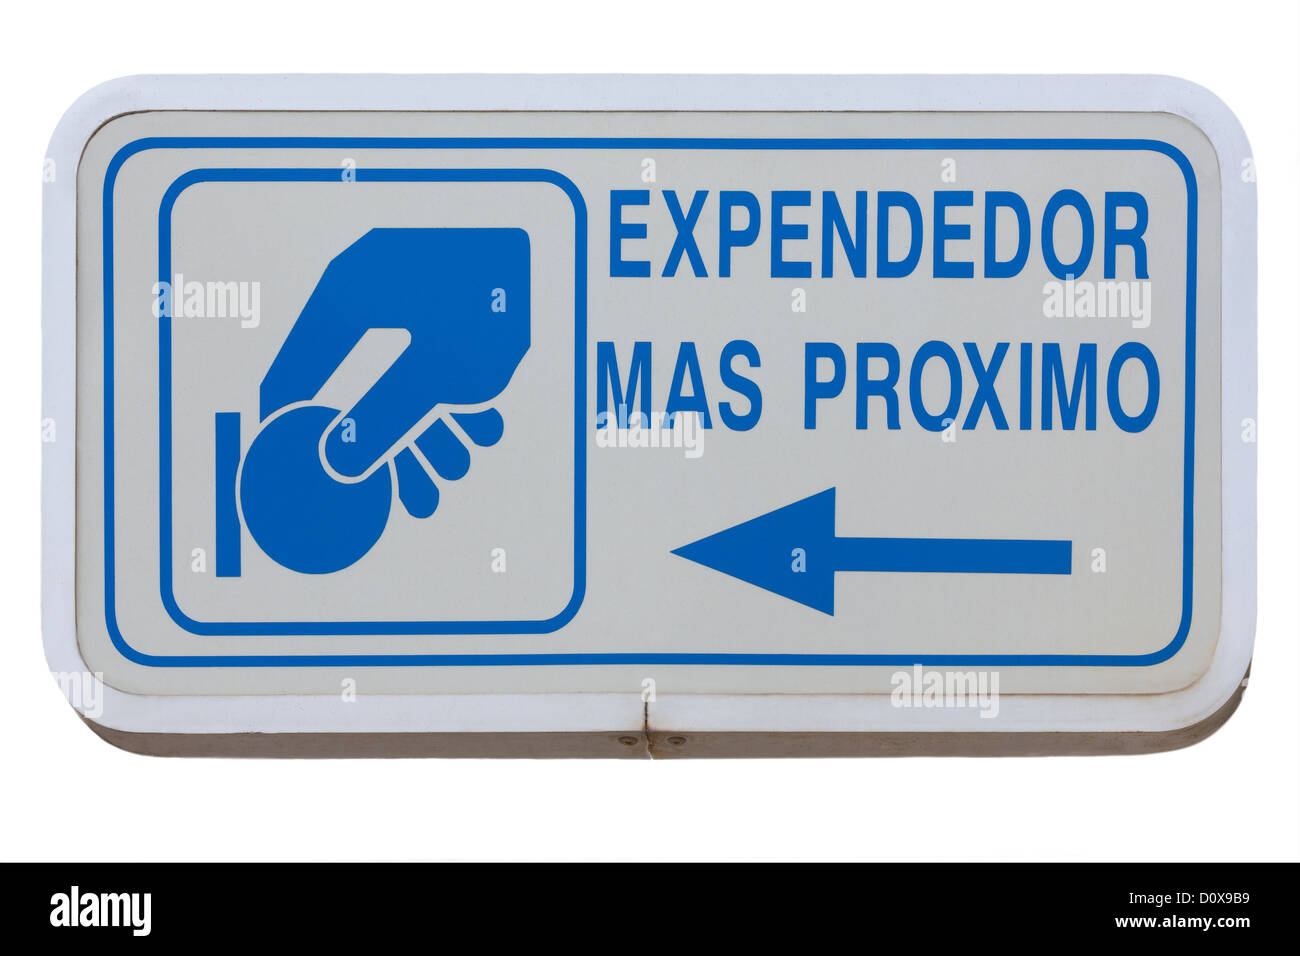 Por favor, pagar aquí signos española: Expendedor mas proximo, apuntando al próximo parquímetro en Andalucia Andalucía, España Foto de stock